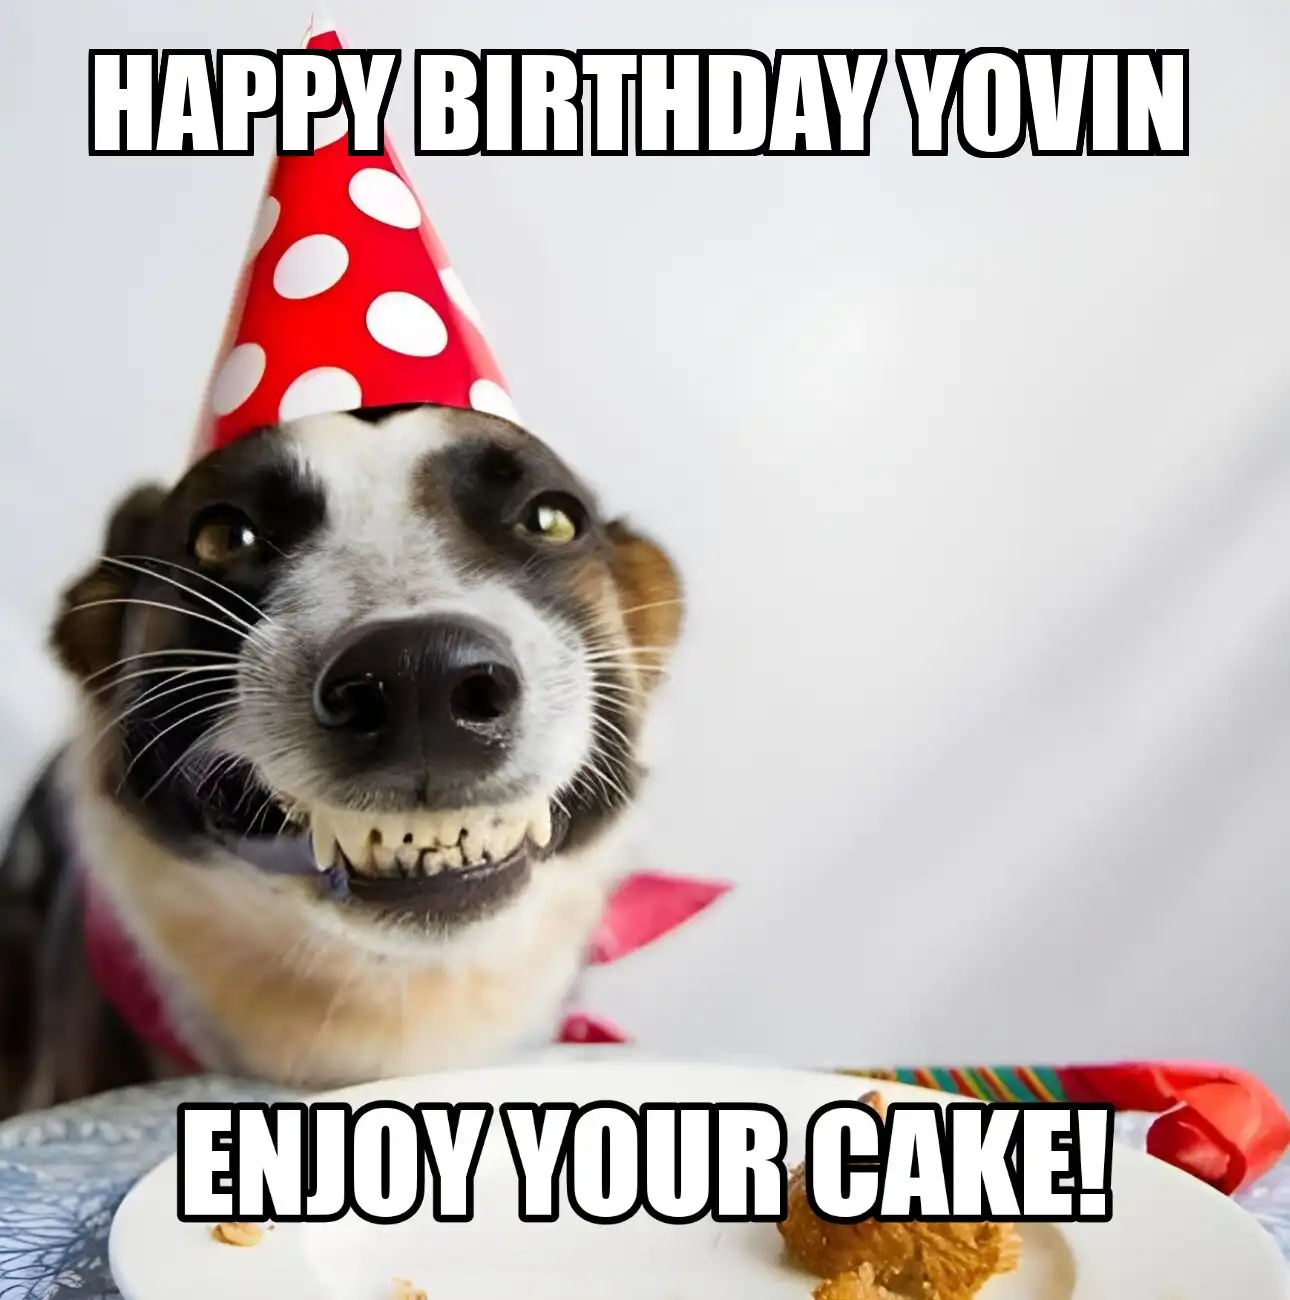 Happy Birthday Yovin Enjoy Your Cake Dog Meme